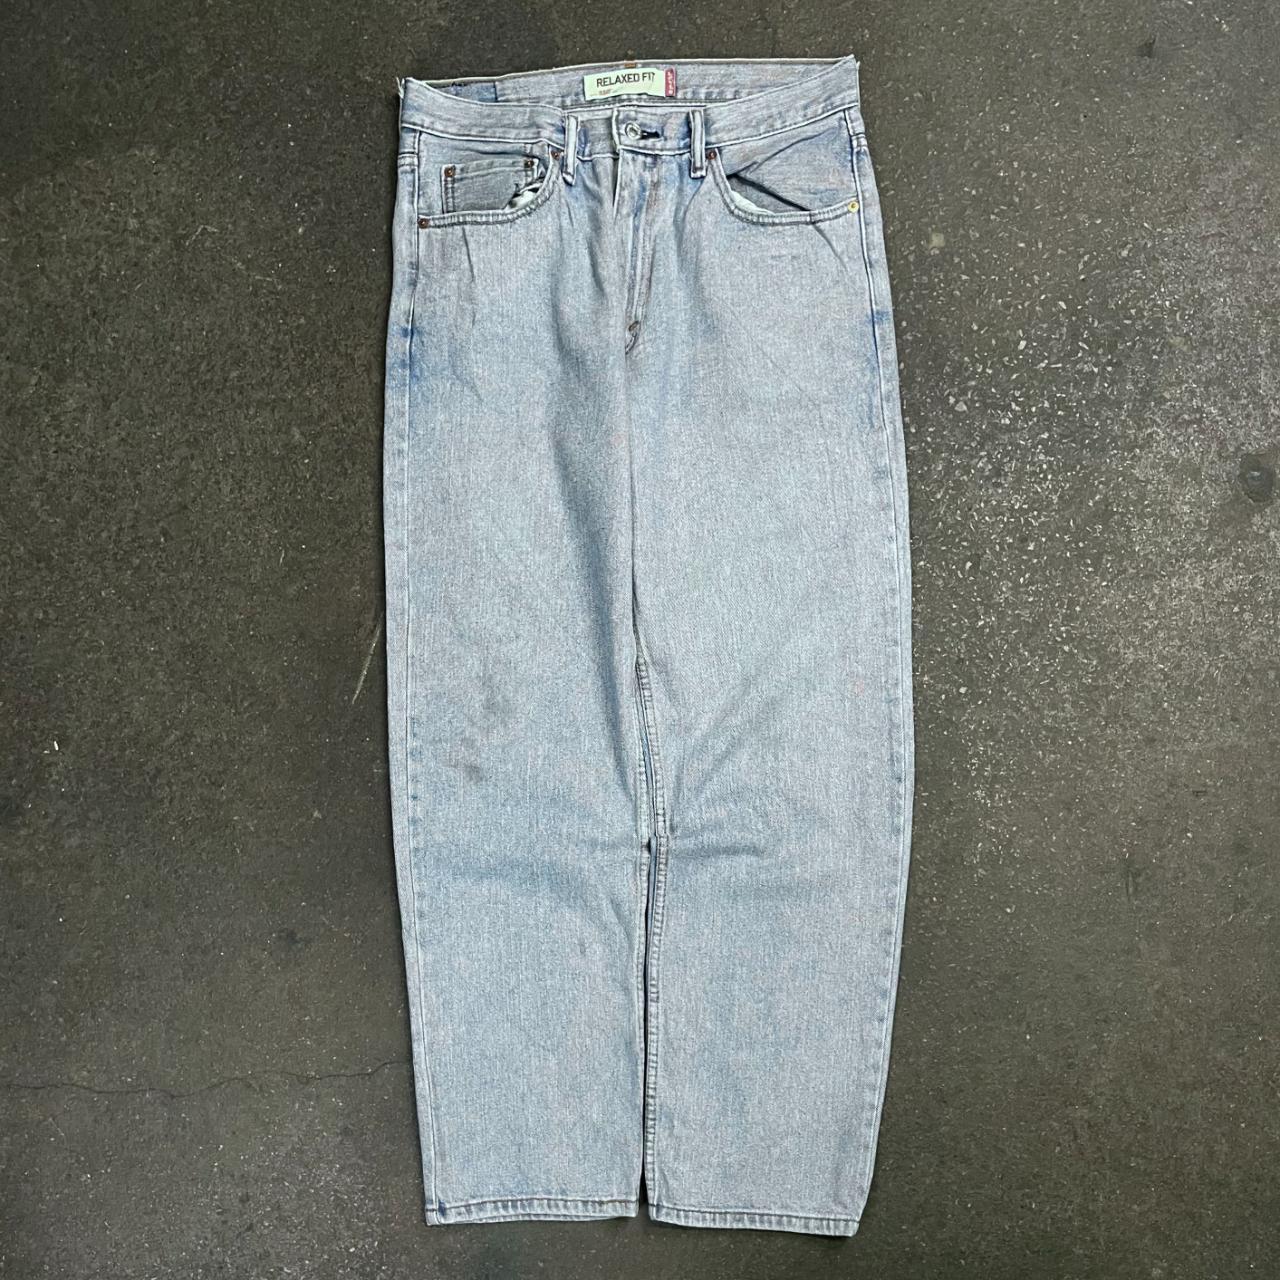 Vintage Levis 550 baggy jeans 90s Levi’s 550... - Depop